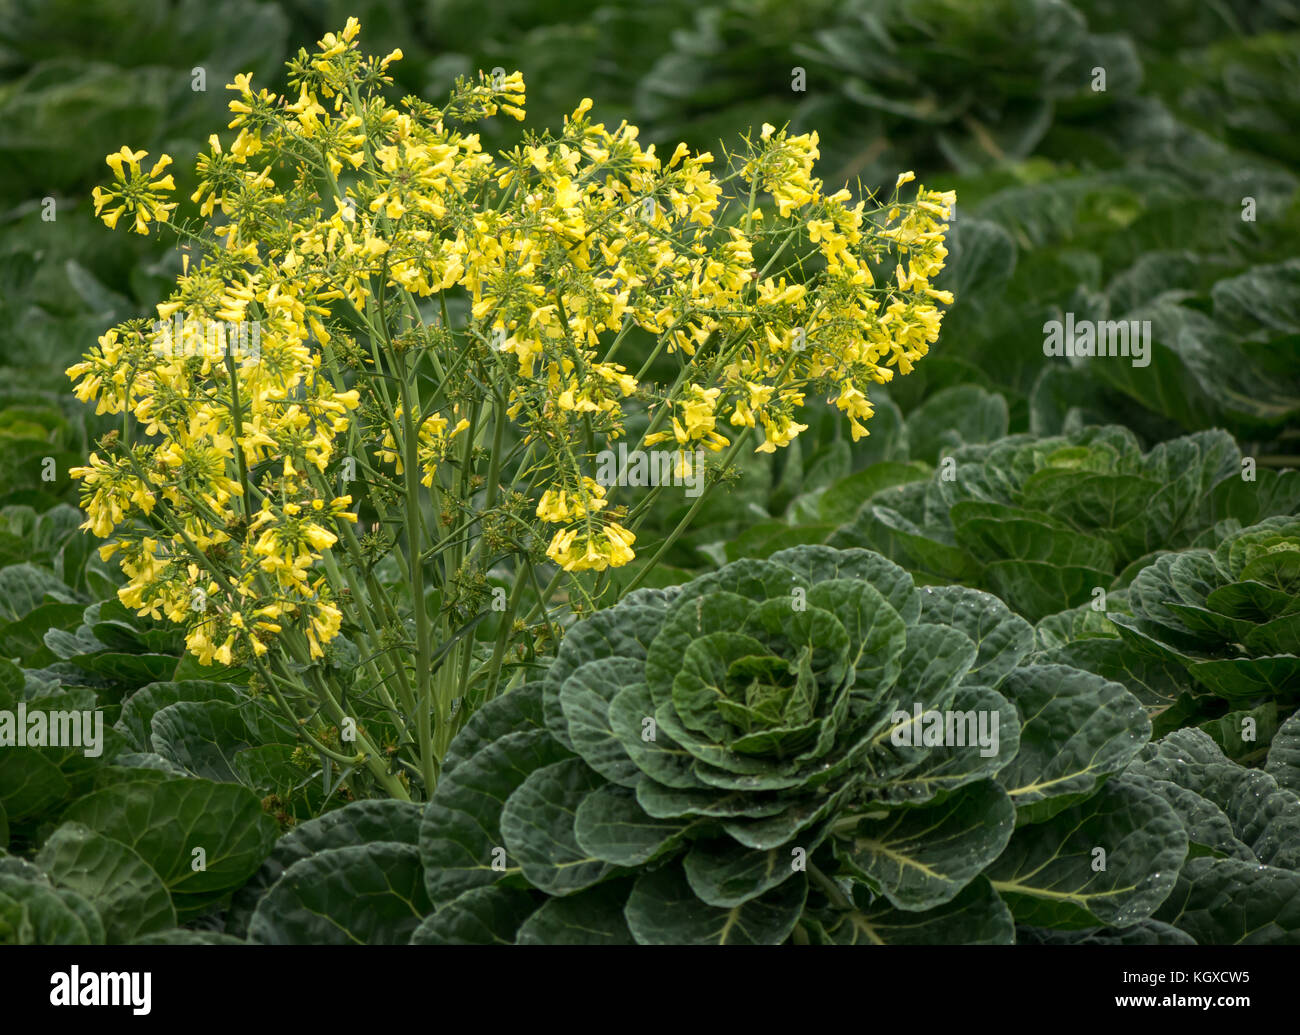 Nahaufnahme von Rosenkohl Pflanze, Brassica oleracea, wachsen im Getreidefeld mit gelb blühenden Unkraut, East Lothian, Schottland, Großbritannien Stockfoto